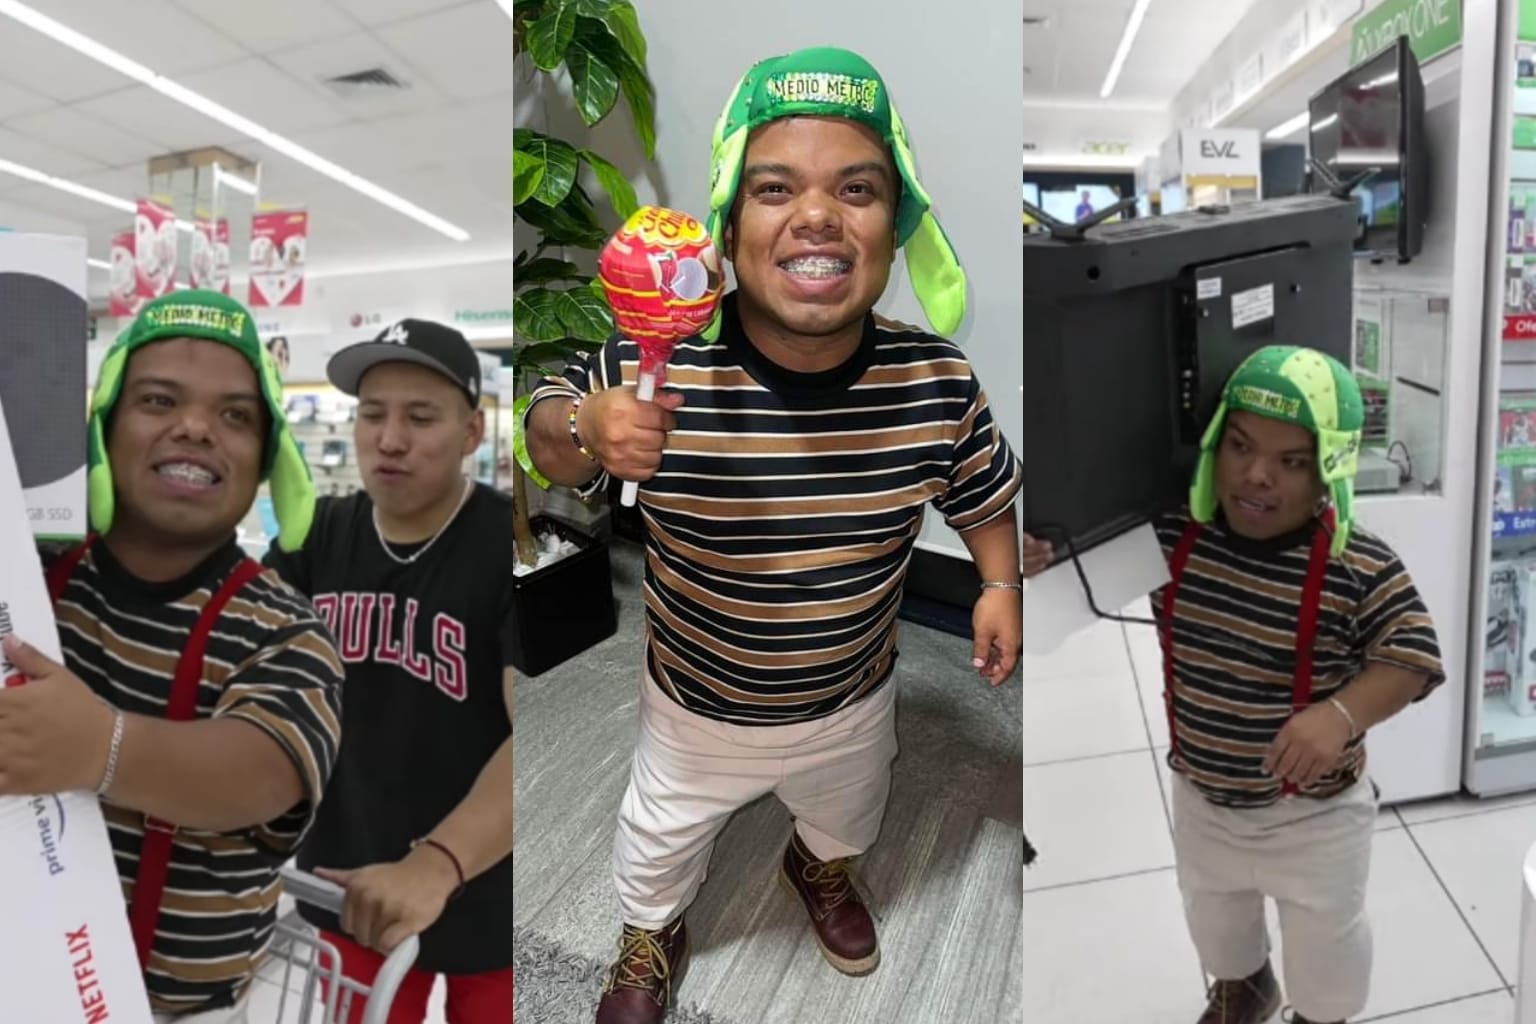 Yulay regala a Medio Metro miles de pesos en tienda electrónica; "agarra todo lo que quieras"